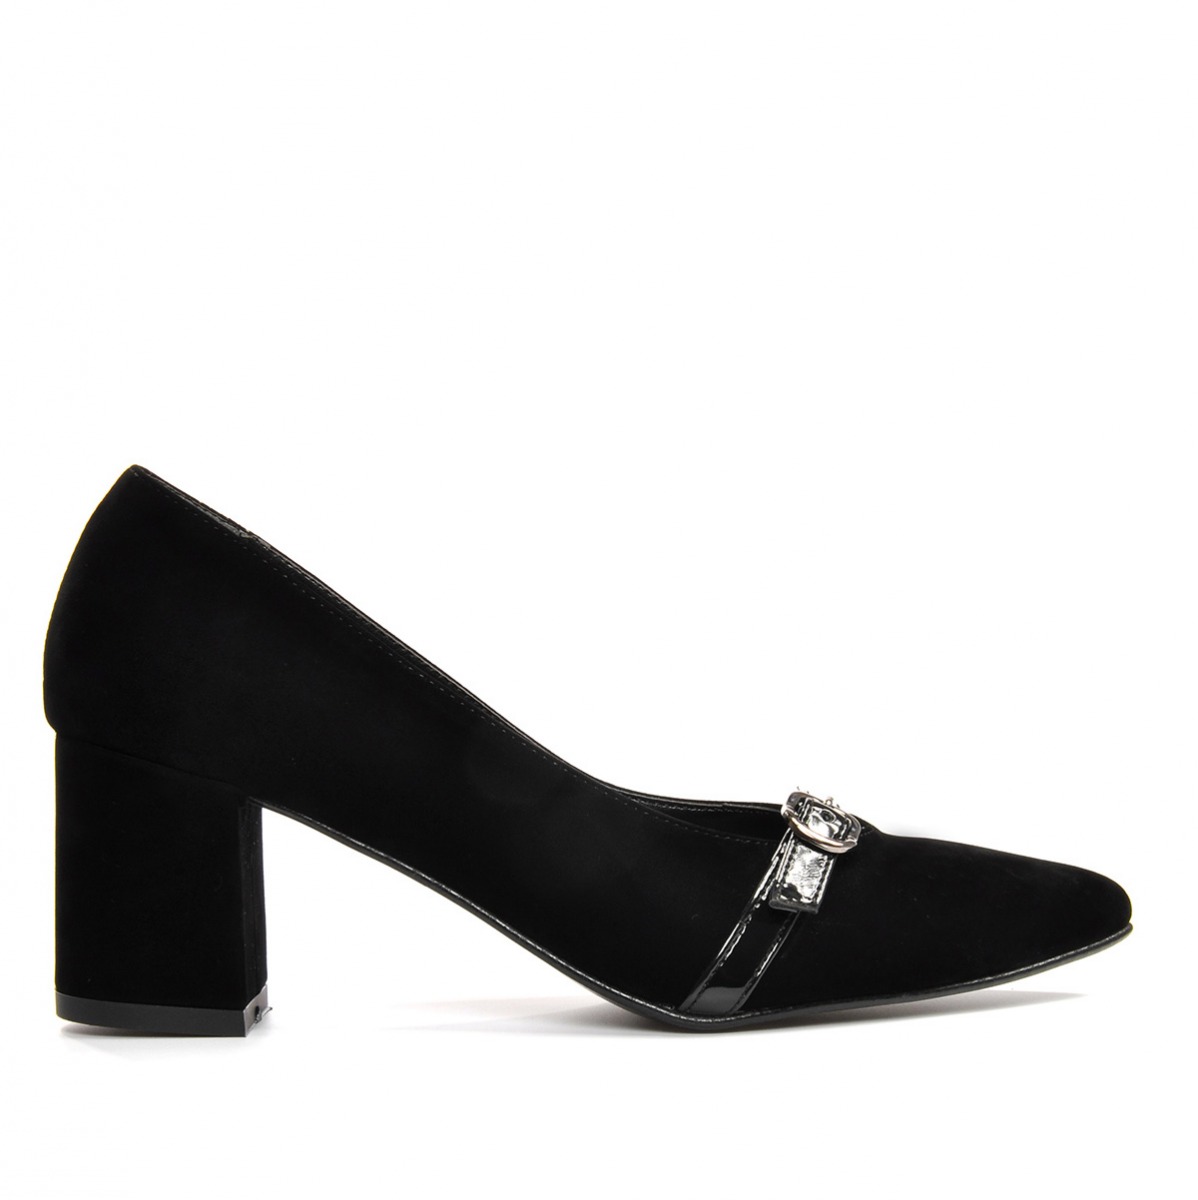 Flo Kadın  Siyah-Süet Klasik Topuklu Ayakkabı VZN19-110K. 2